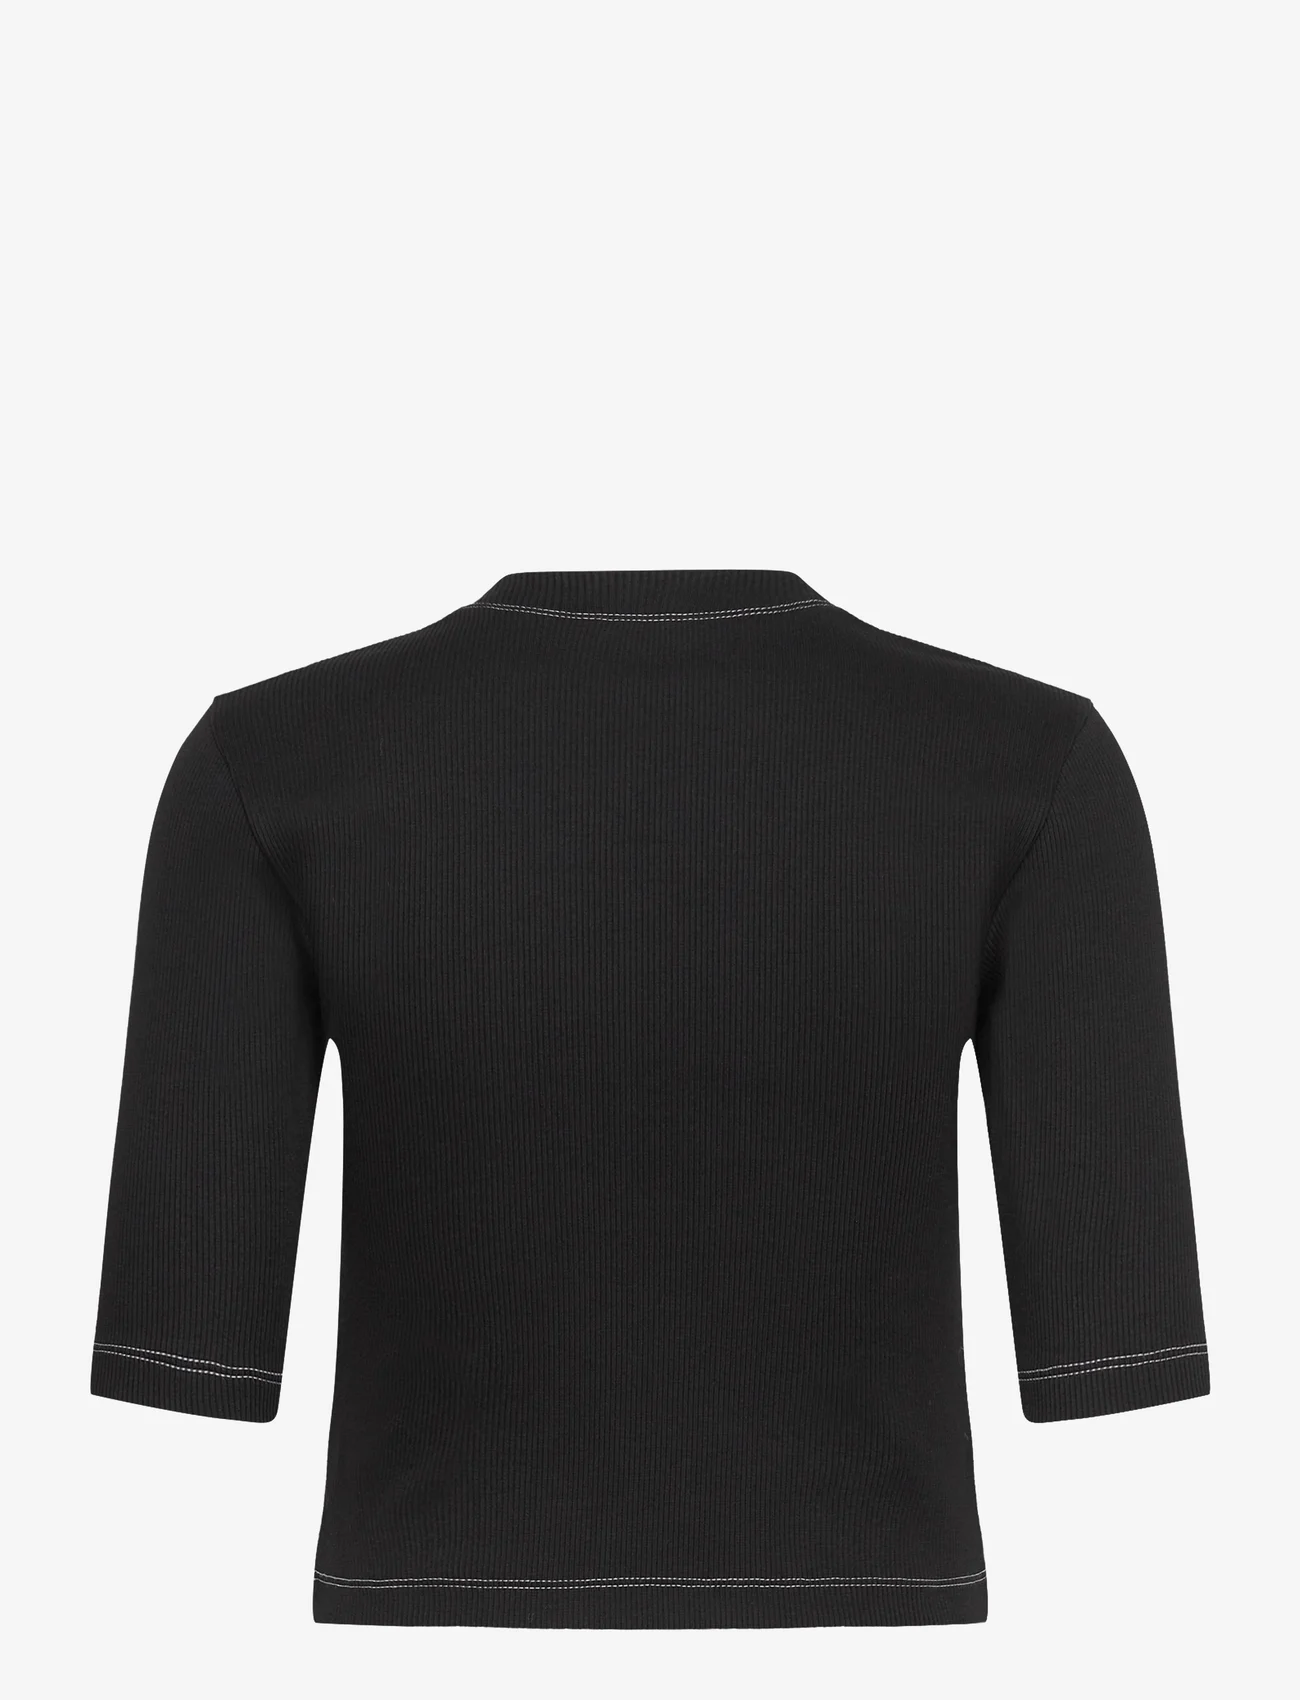 Day Birger et Mikkelsen - Bram - Heavy Rib - t-shirts - black - 1